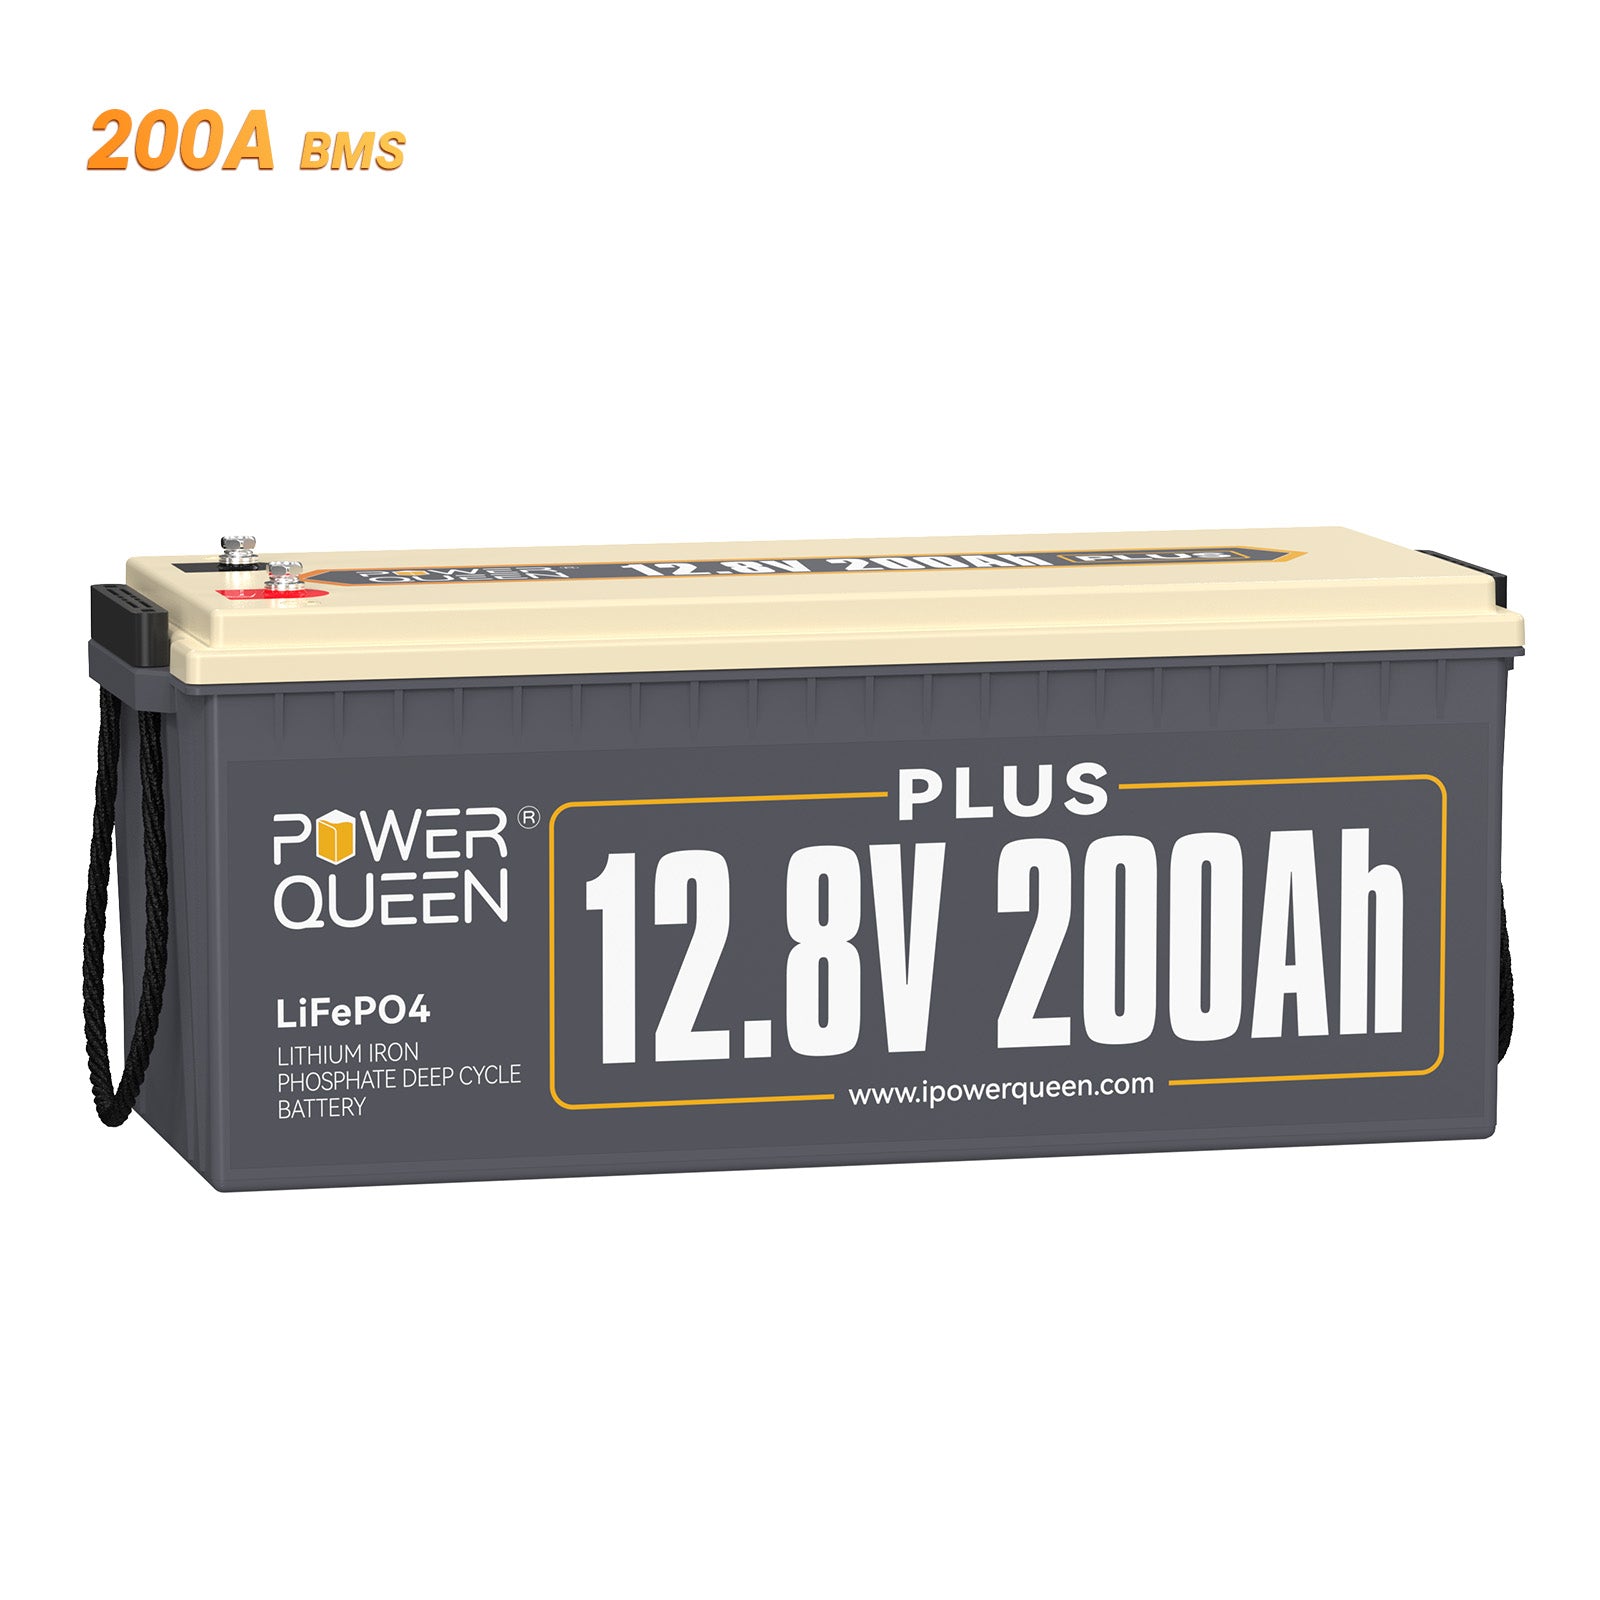 Batería Power Queen de 12 V, 200 Ah más LiFePO4, BMS integrado de 200 A